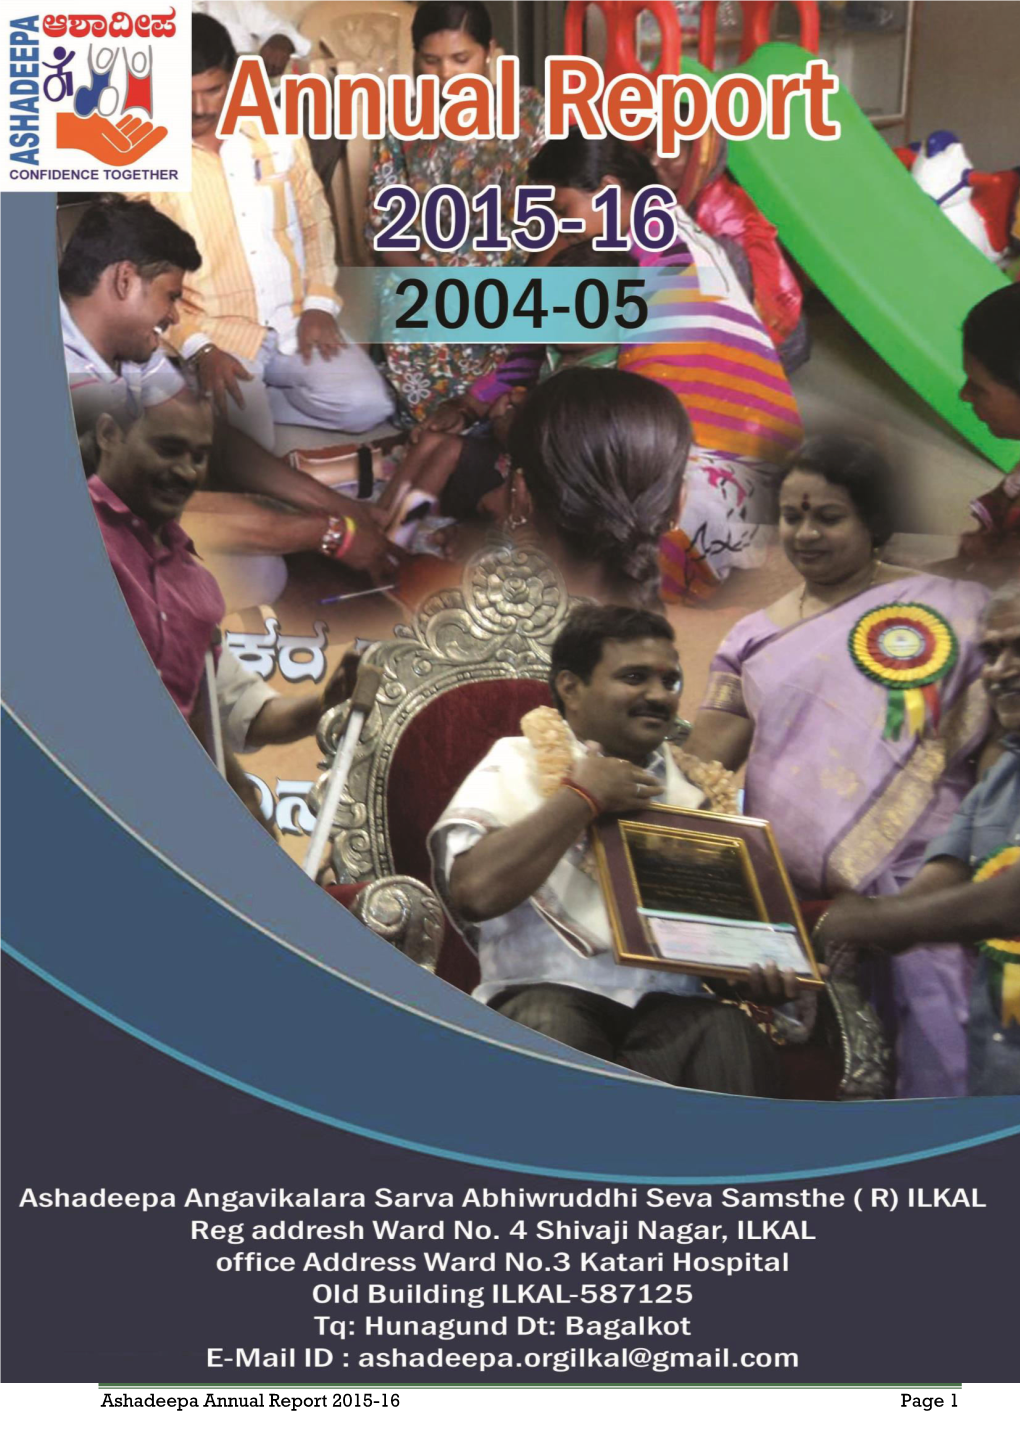 Ashadeepa Annual Report 2015-16 Page 1